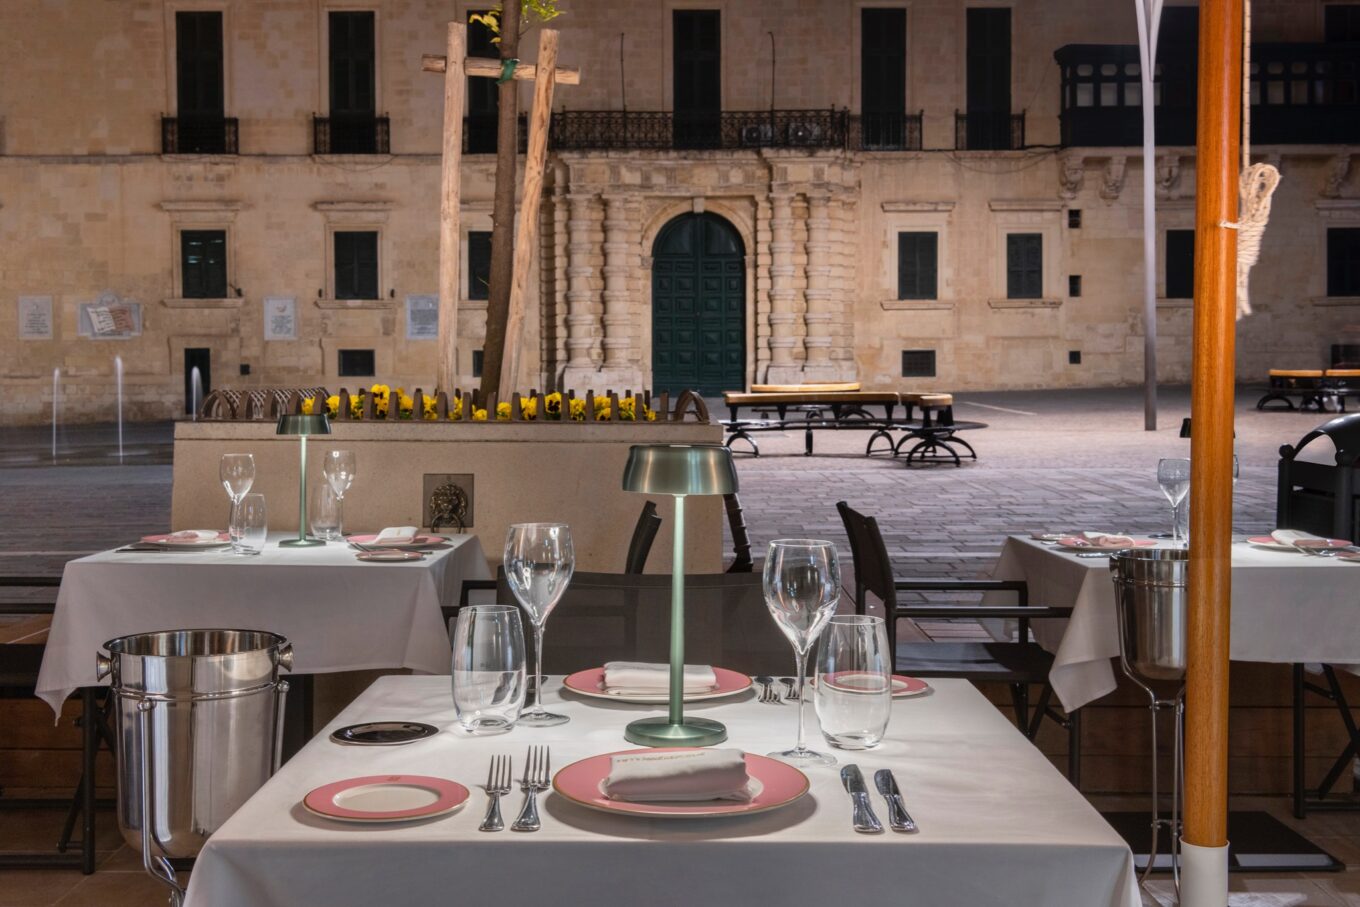 eten in Valletta - beste restaurants in Valletta - leukste restaurants in Valletta - Restaurant hoofdstad malta - restaurants Malta - culinaire hotspots malta - gezellige restaurants Valletta - uiteten in Valletta